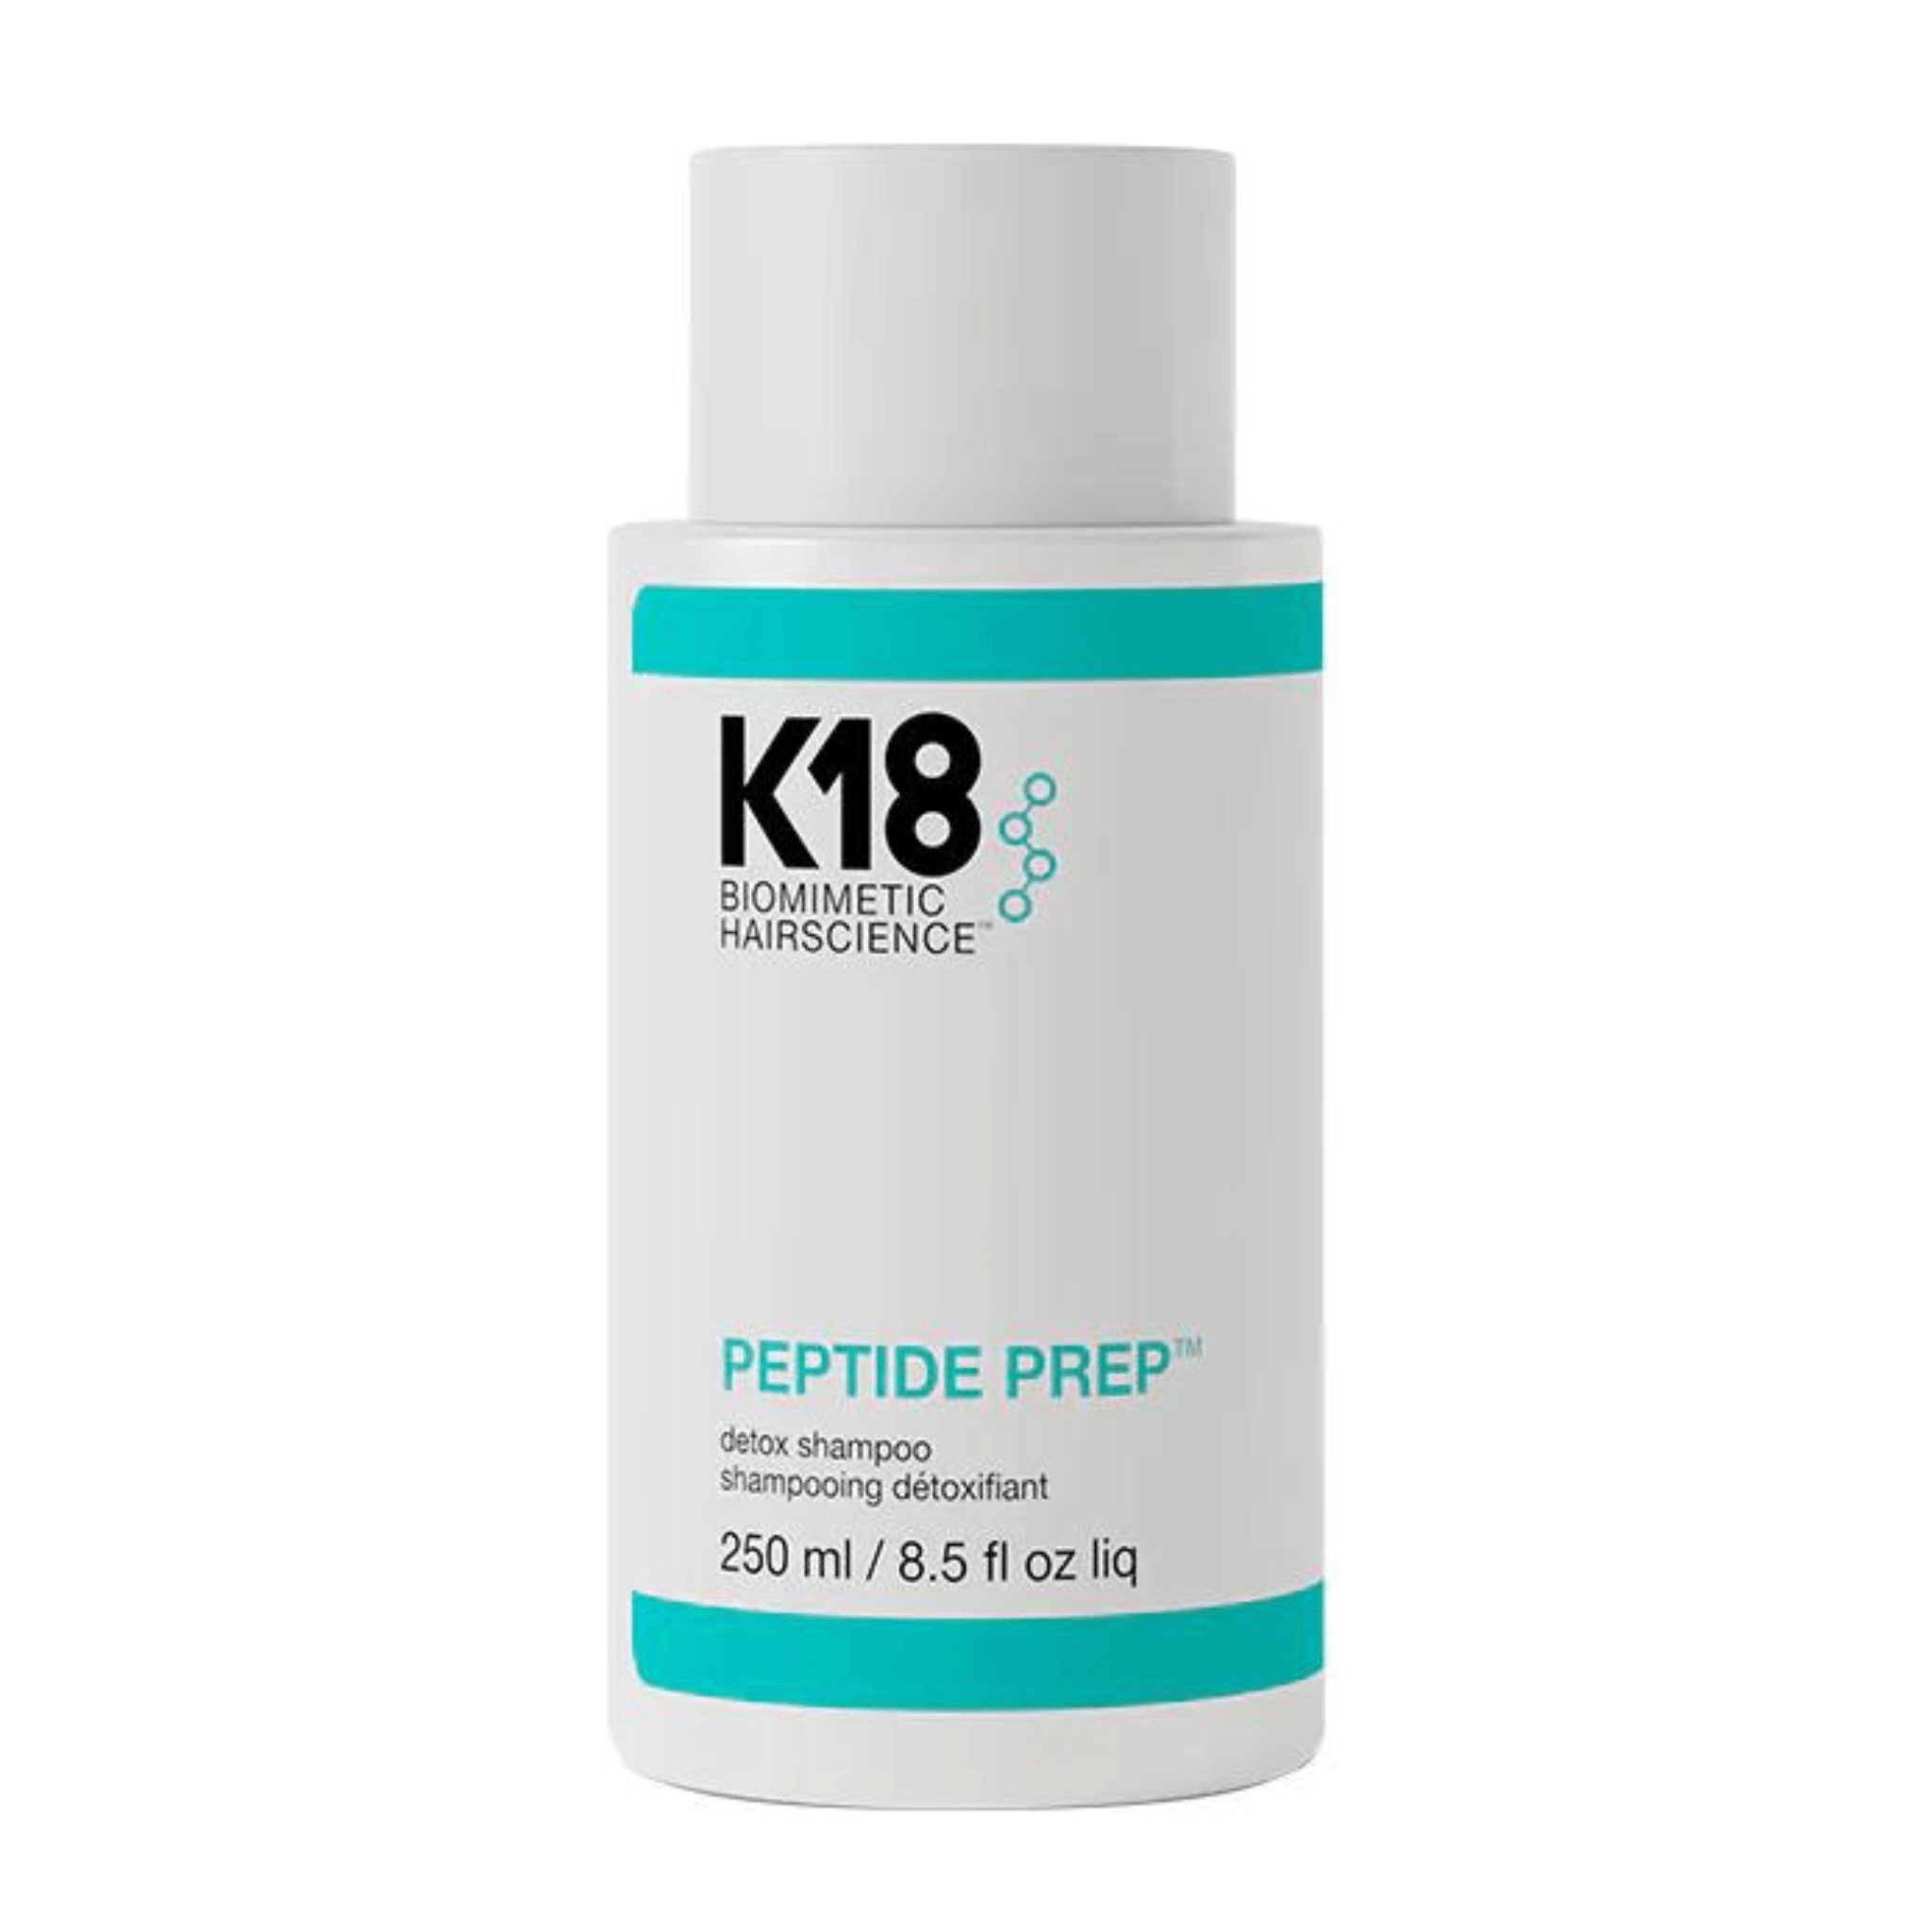 K18. Shampoing Détoxifiant Peptide Prep - 250 ml - Concept C. Shop